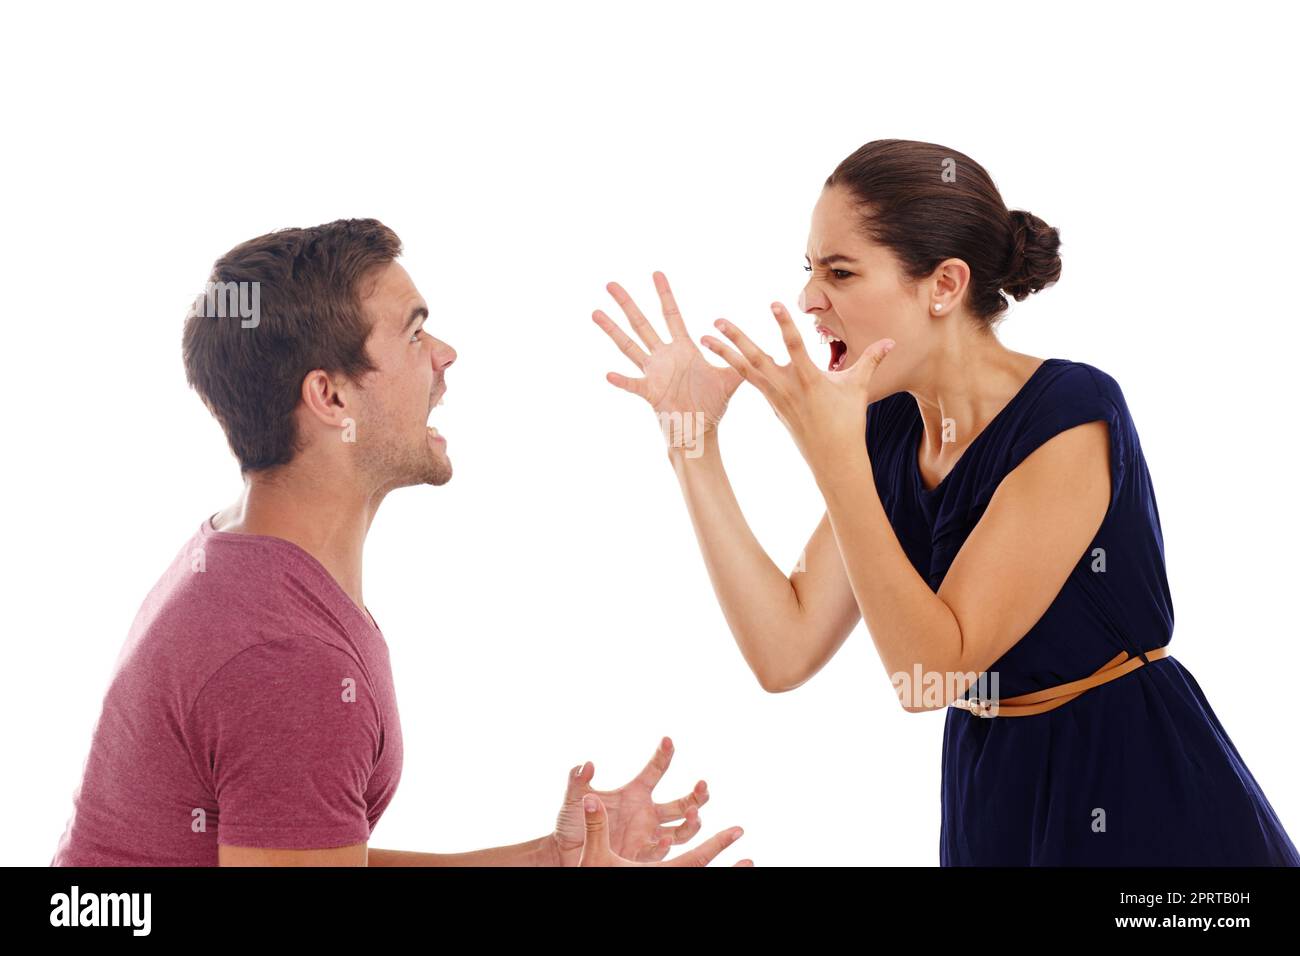 Nun, machen Sie es durch diese ein. Ein wunderschönes junges Paar streiten, während in einem Studio-isoliert auf weiß stehen. Stockfoto